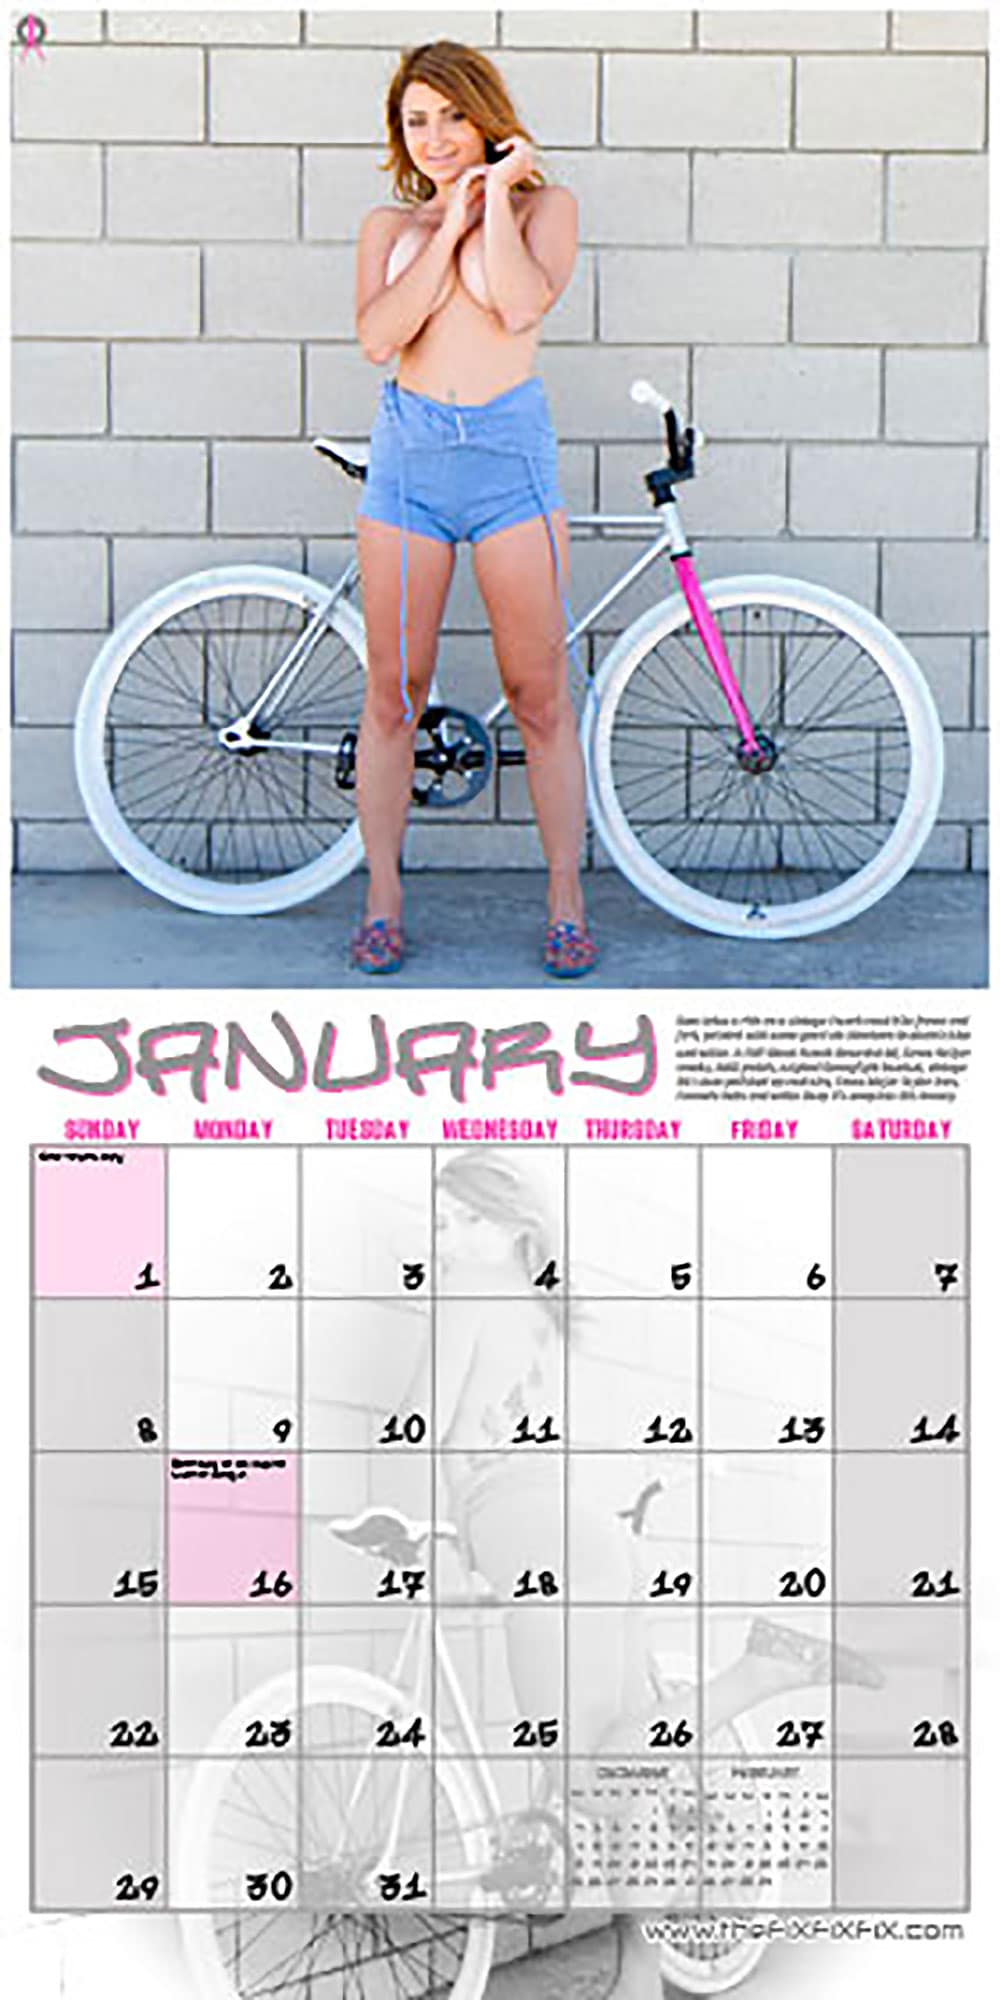 Le calendrier 2012 Thefixfixfix est enfin disponible